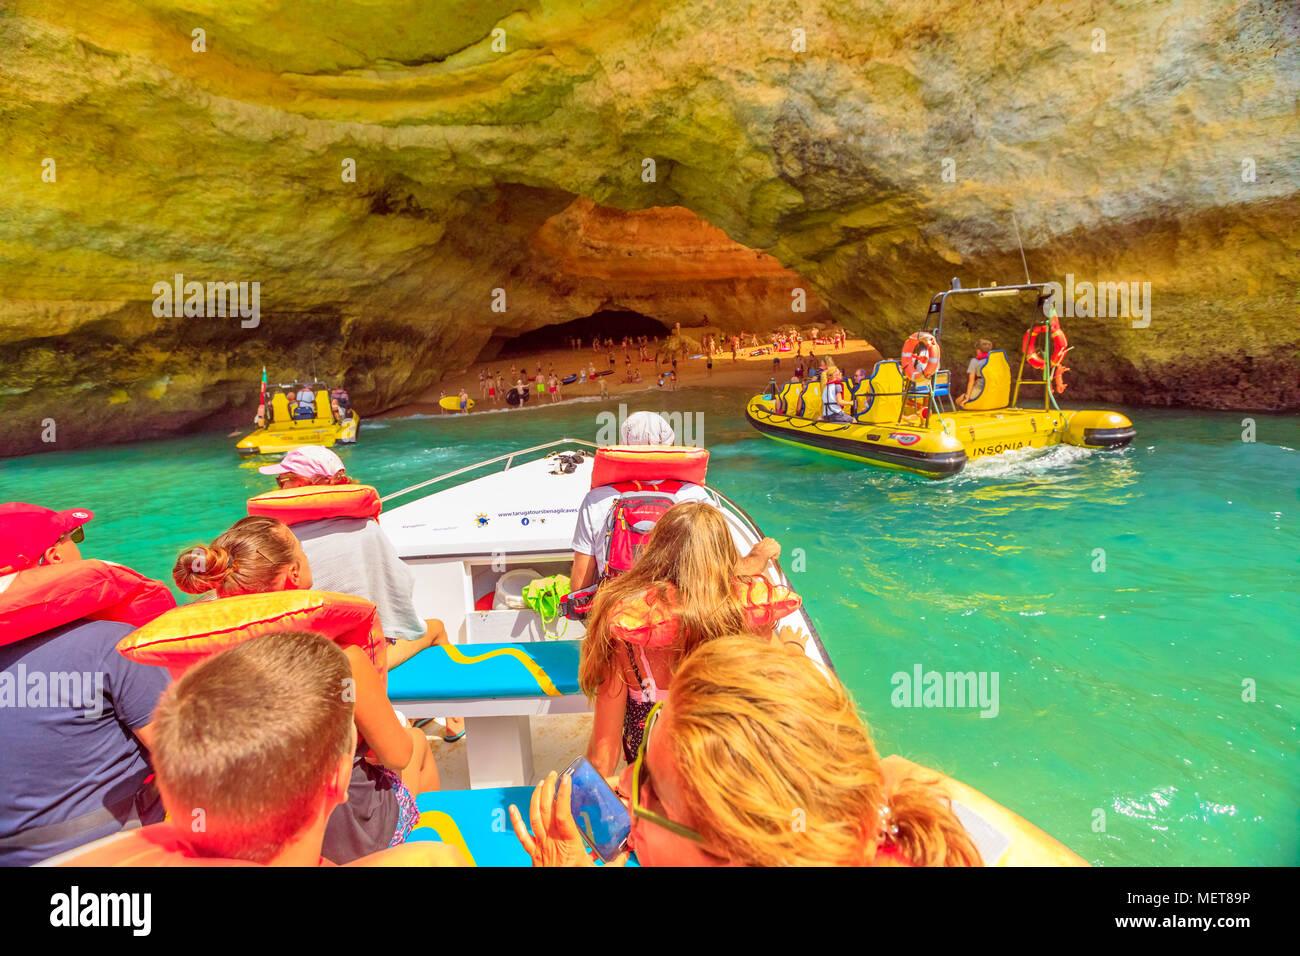 Benagil, Portugal - 23 August 2017: Benagil Höhle Bootsfahrt in Algar De Benagil der berühmten Höhle in Algarve, Lagos, Portugal. Bevagil Höhle durch die Bootsfahrt mit vielen Menschen gesehen. Stockfoto